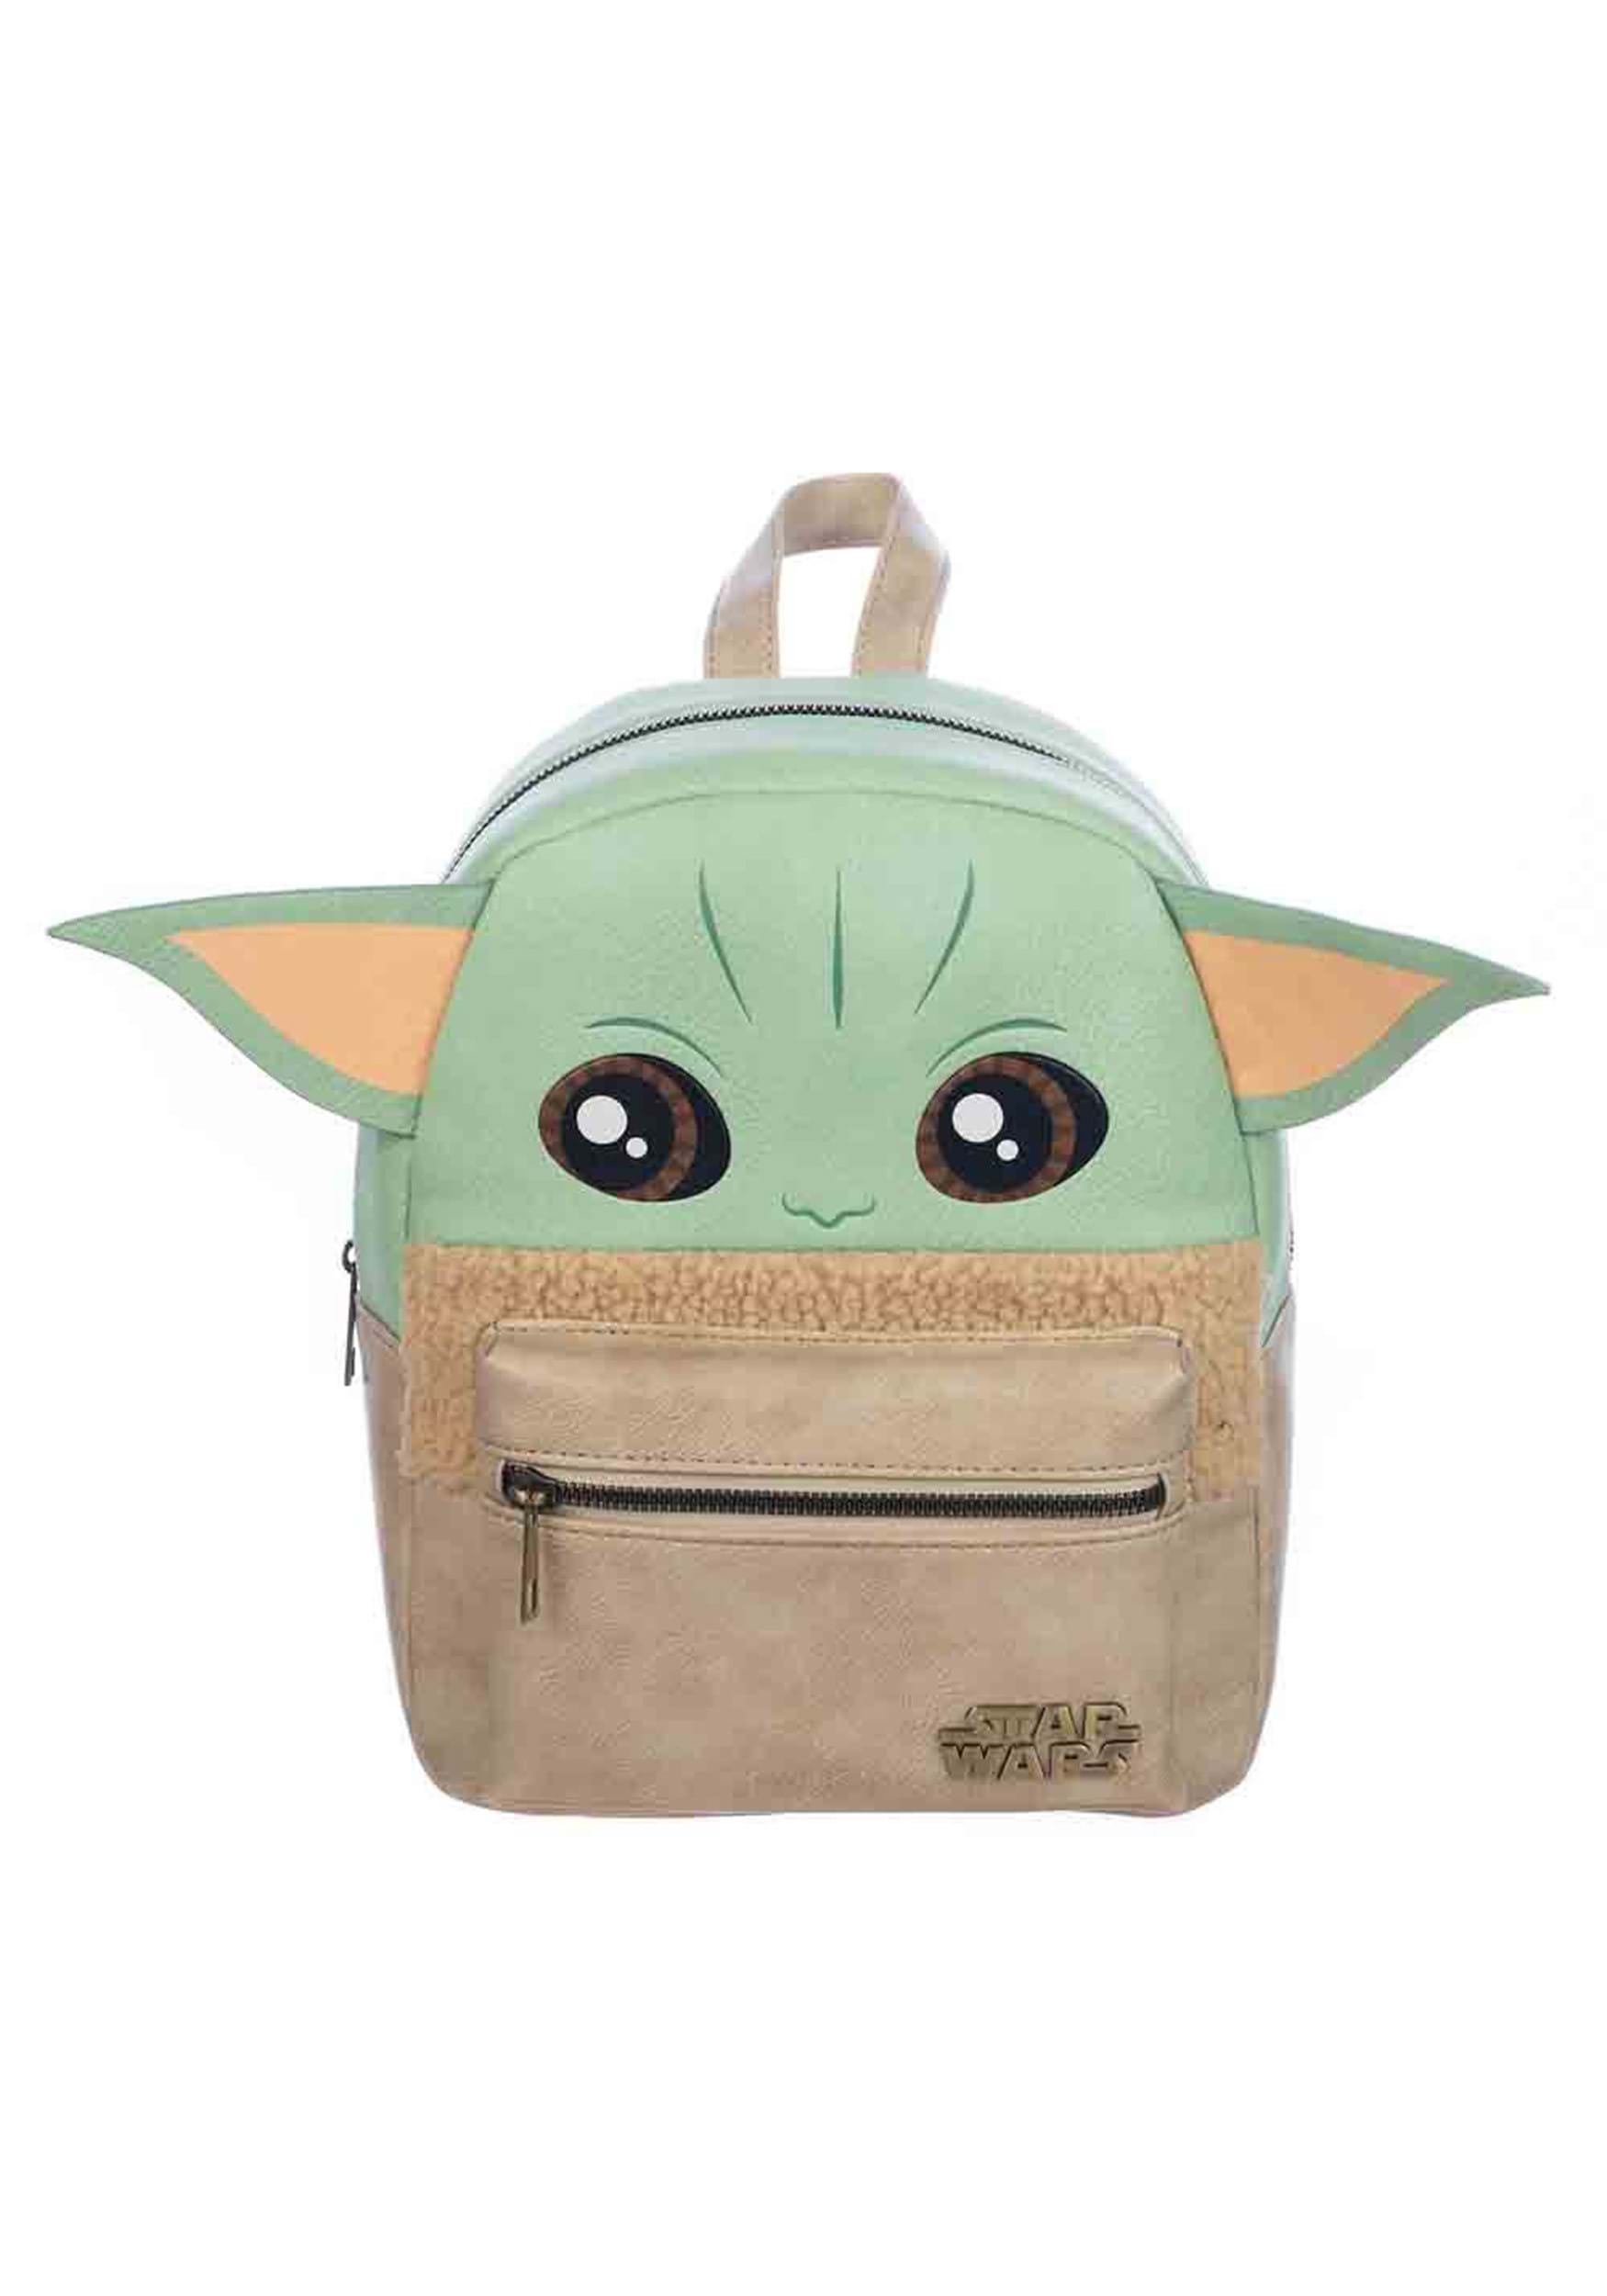 Grogu Mini Backpack from Star Wars The Mandalorian